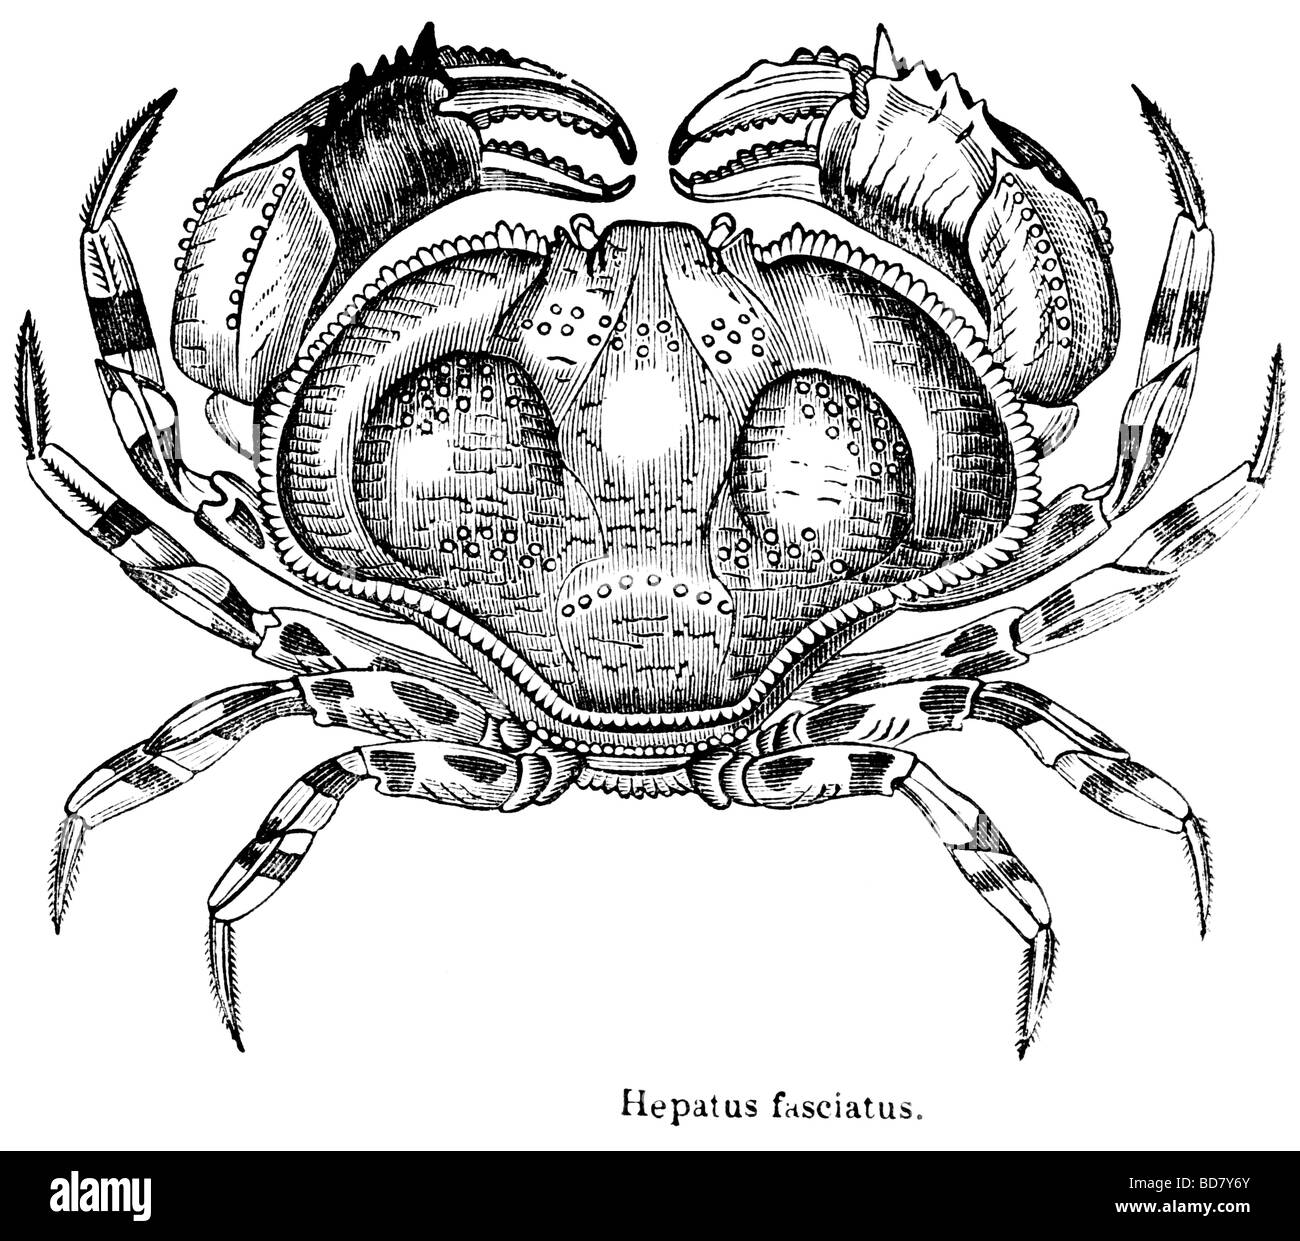 Hepatus fasciatus Stockfoto